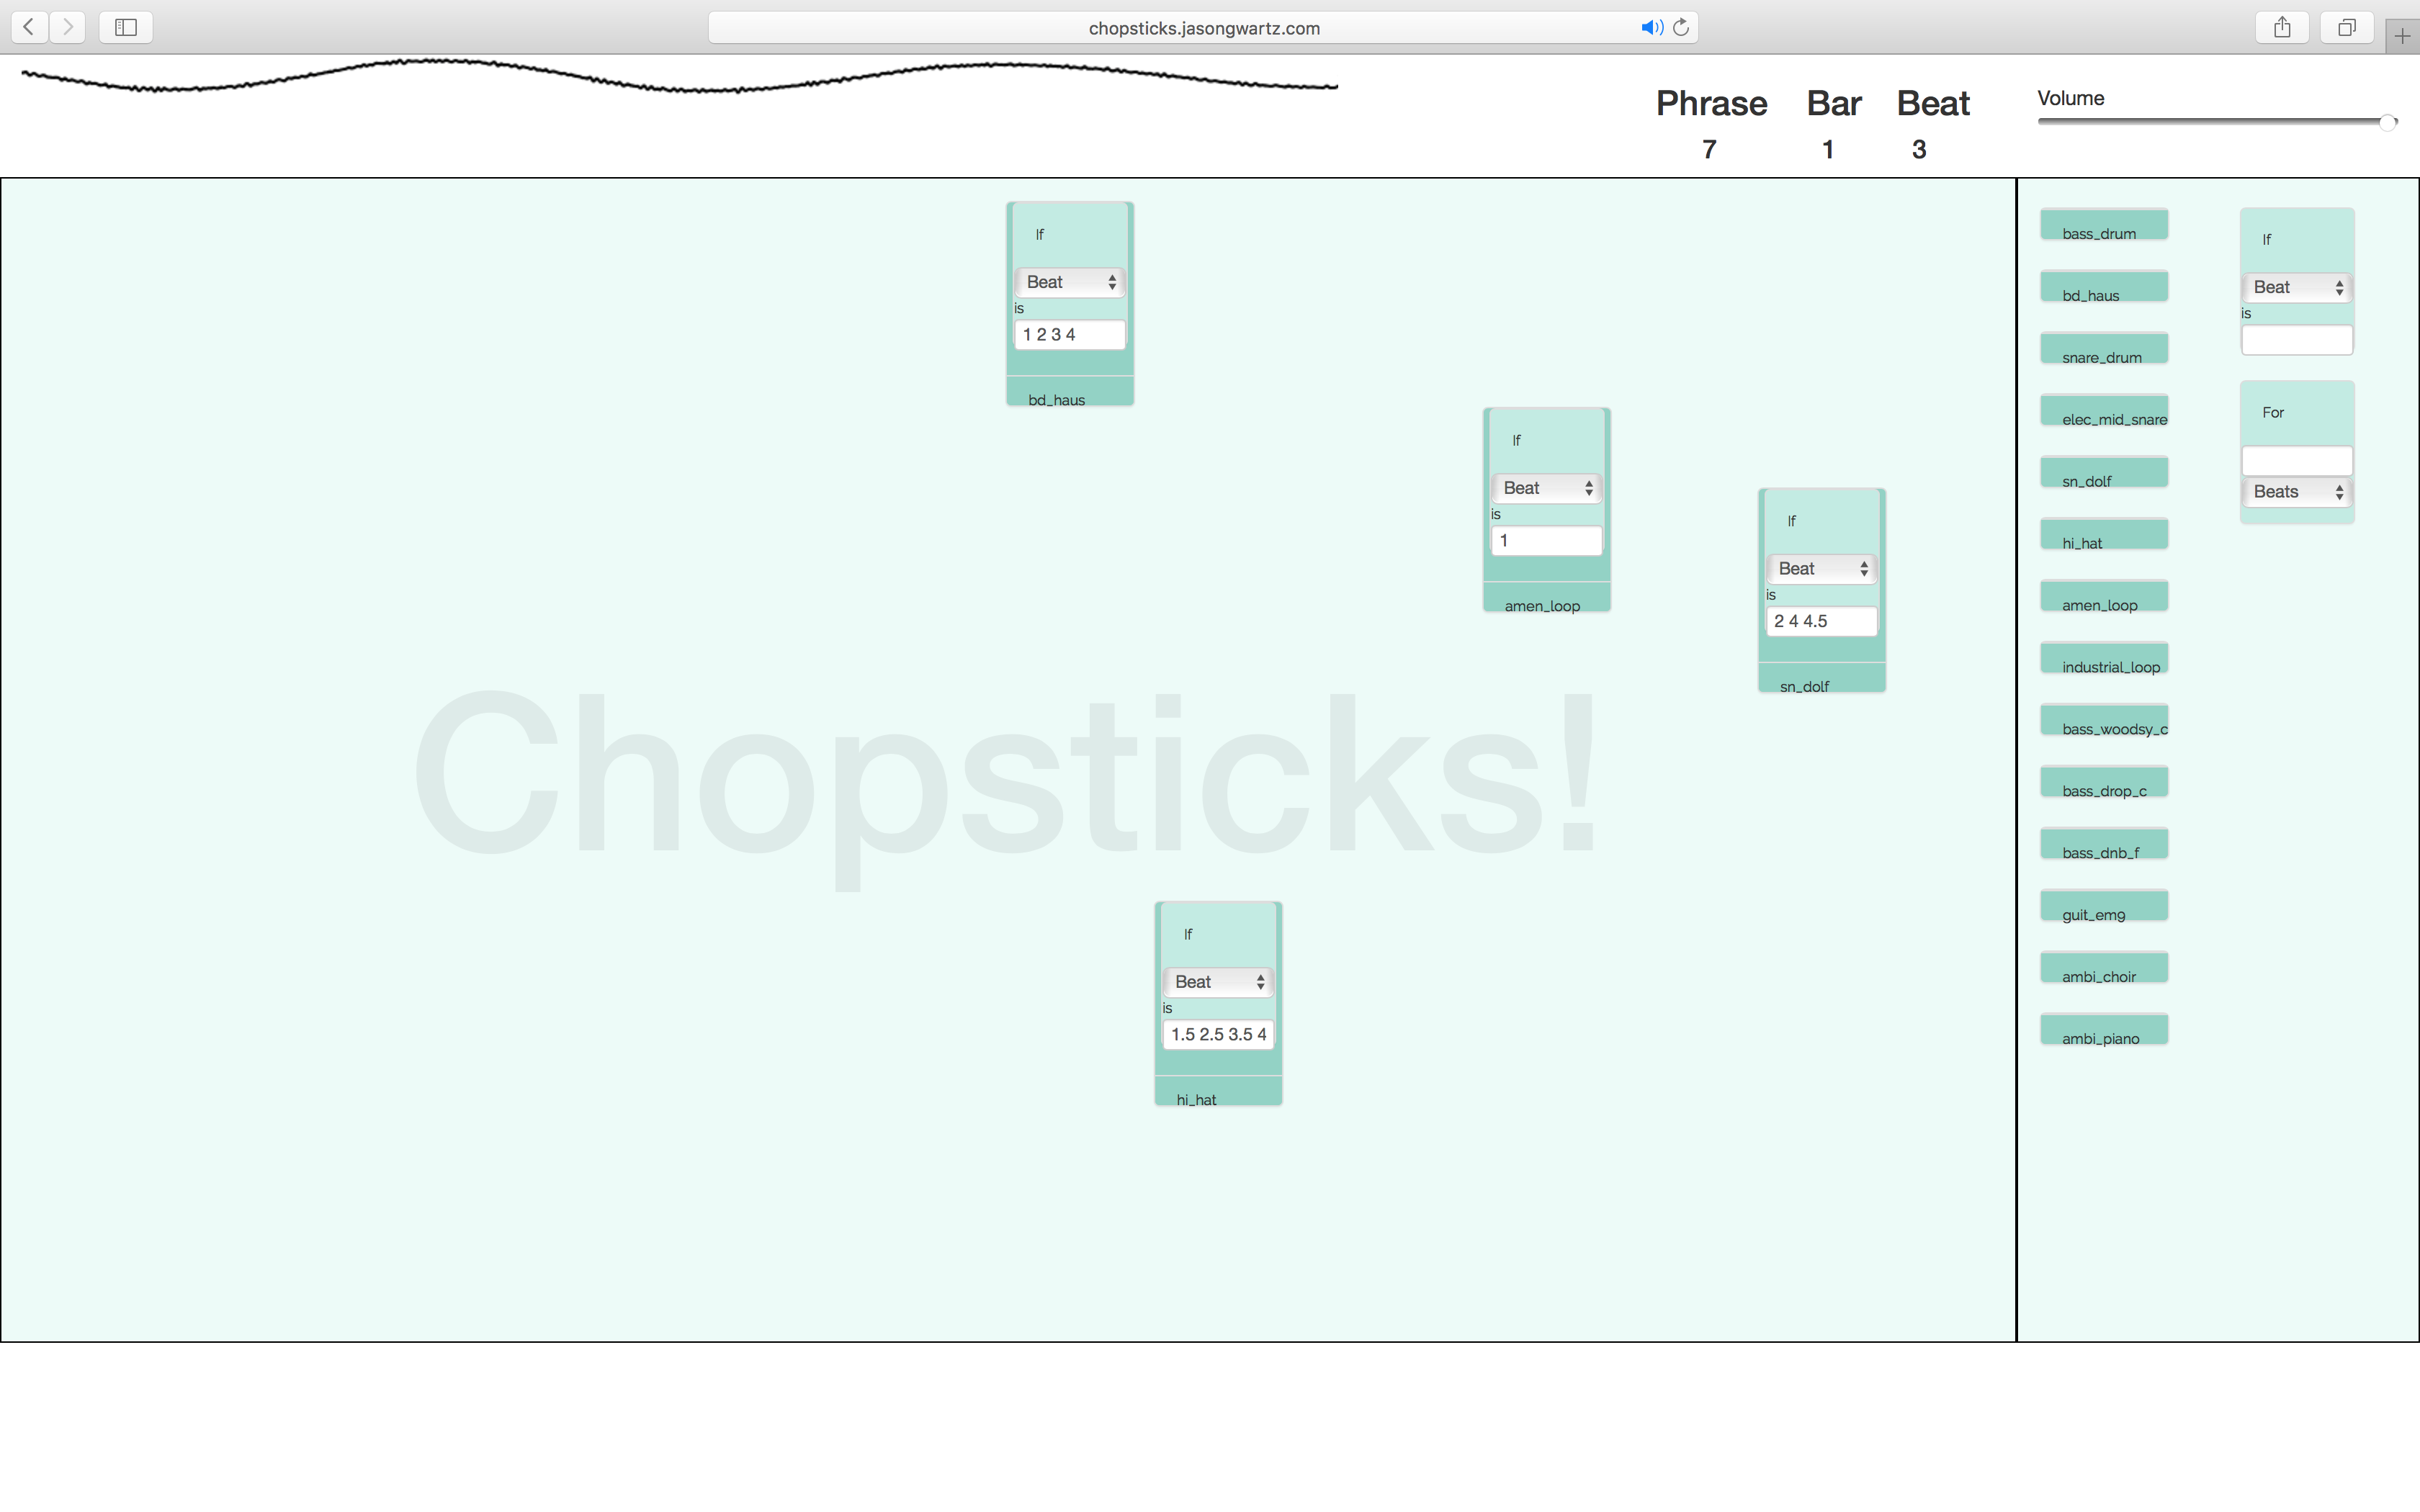 A screenshot of Chopsticks!